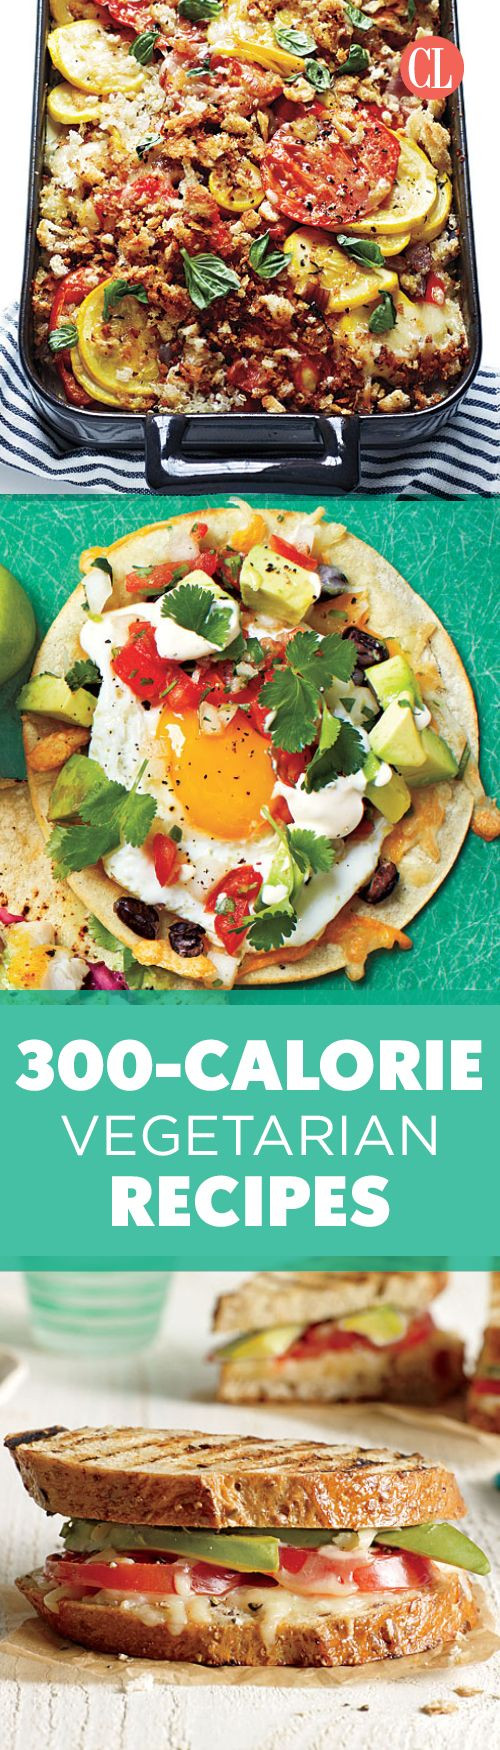 Vegan Low Calorie Recipes
 Best 25 Low calorie ve arian recipes ideas on Pinterest